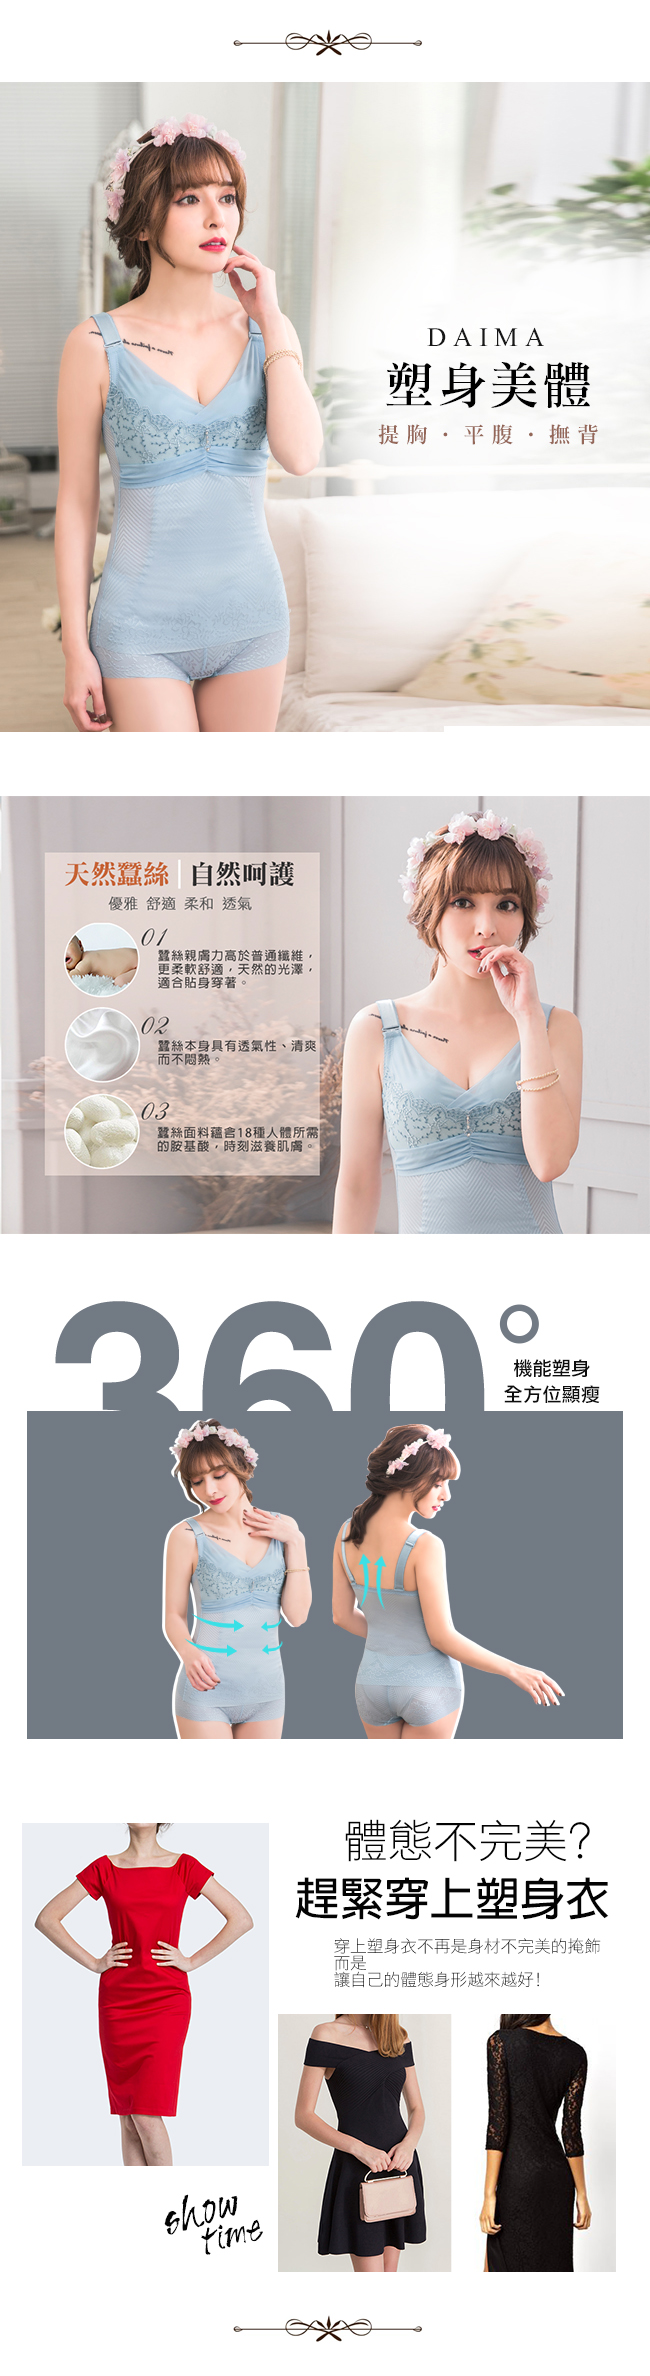 無鋼圈420D蠶絲‧魅力爆乳馬甲塑身衣(水藍)【Daima黛瑪】